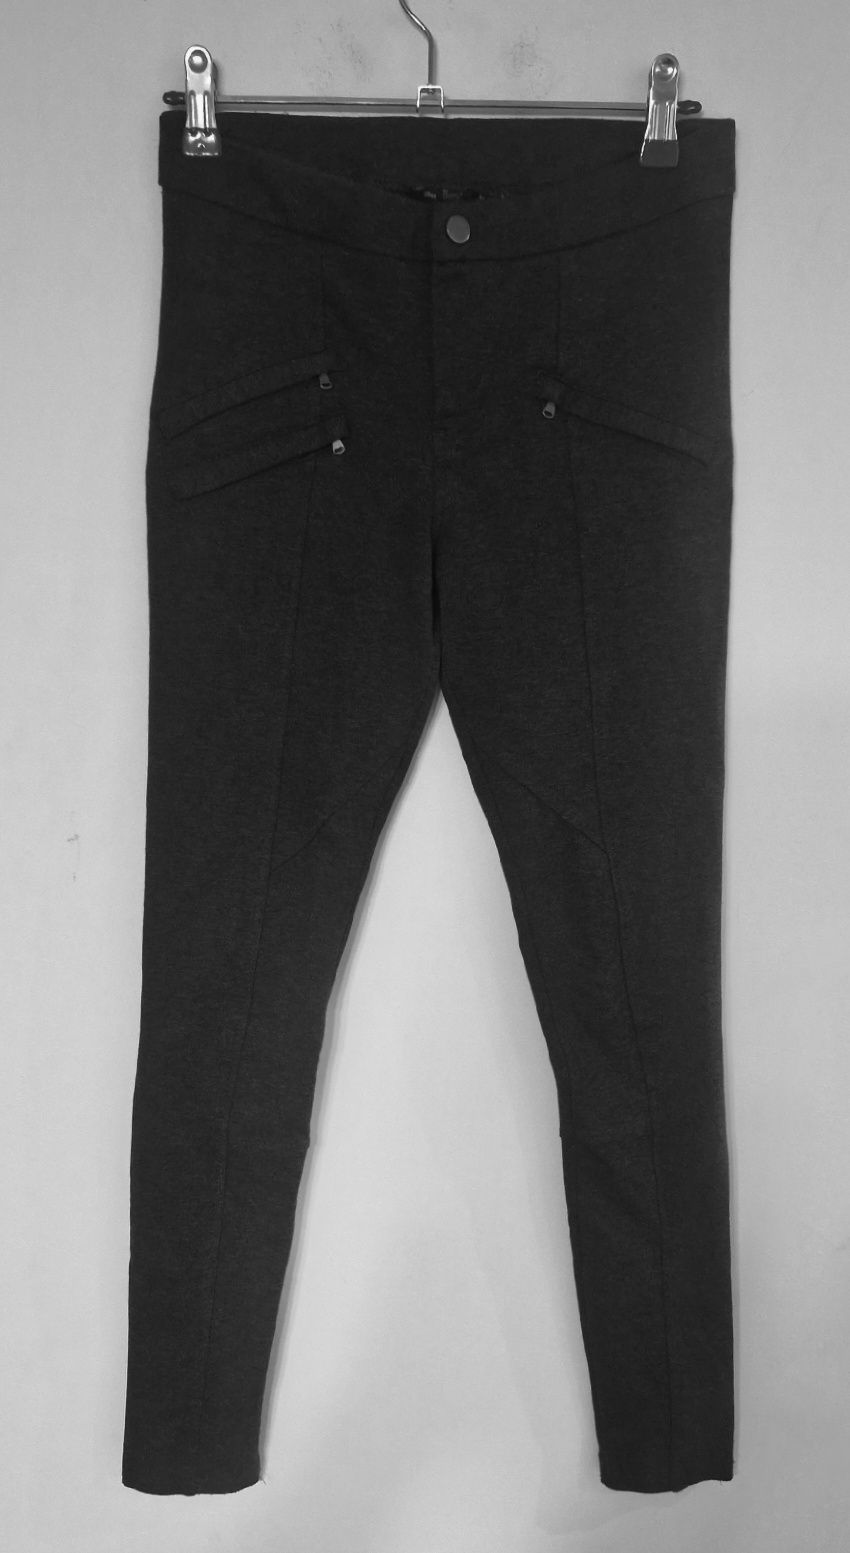 Spodnie przeszycia szare rurki slim legginsy Bershka S/M 36 38